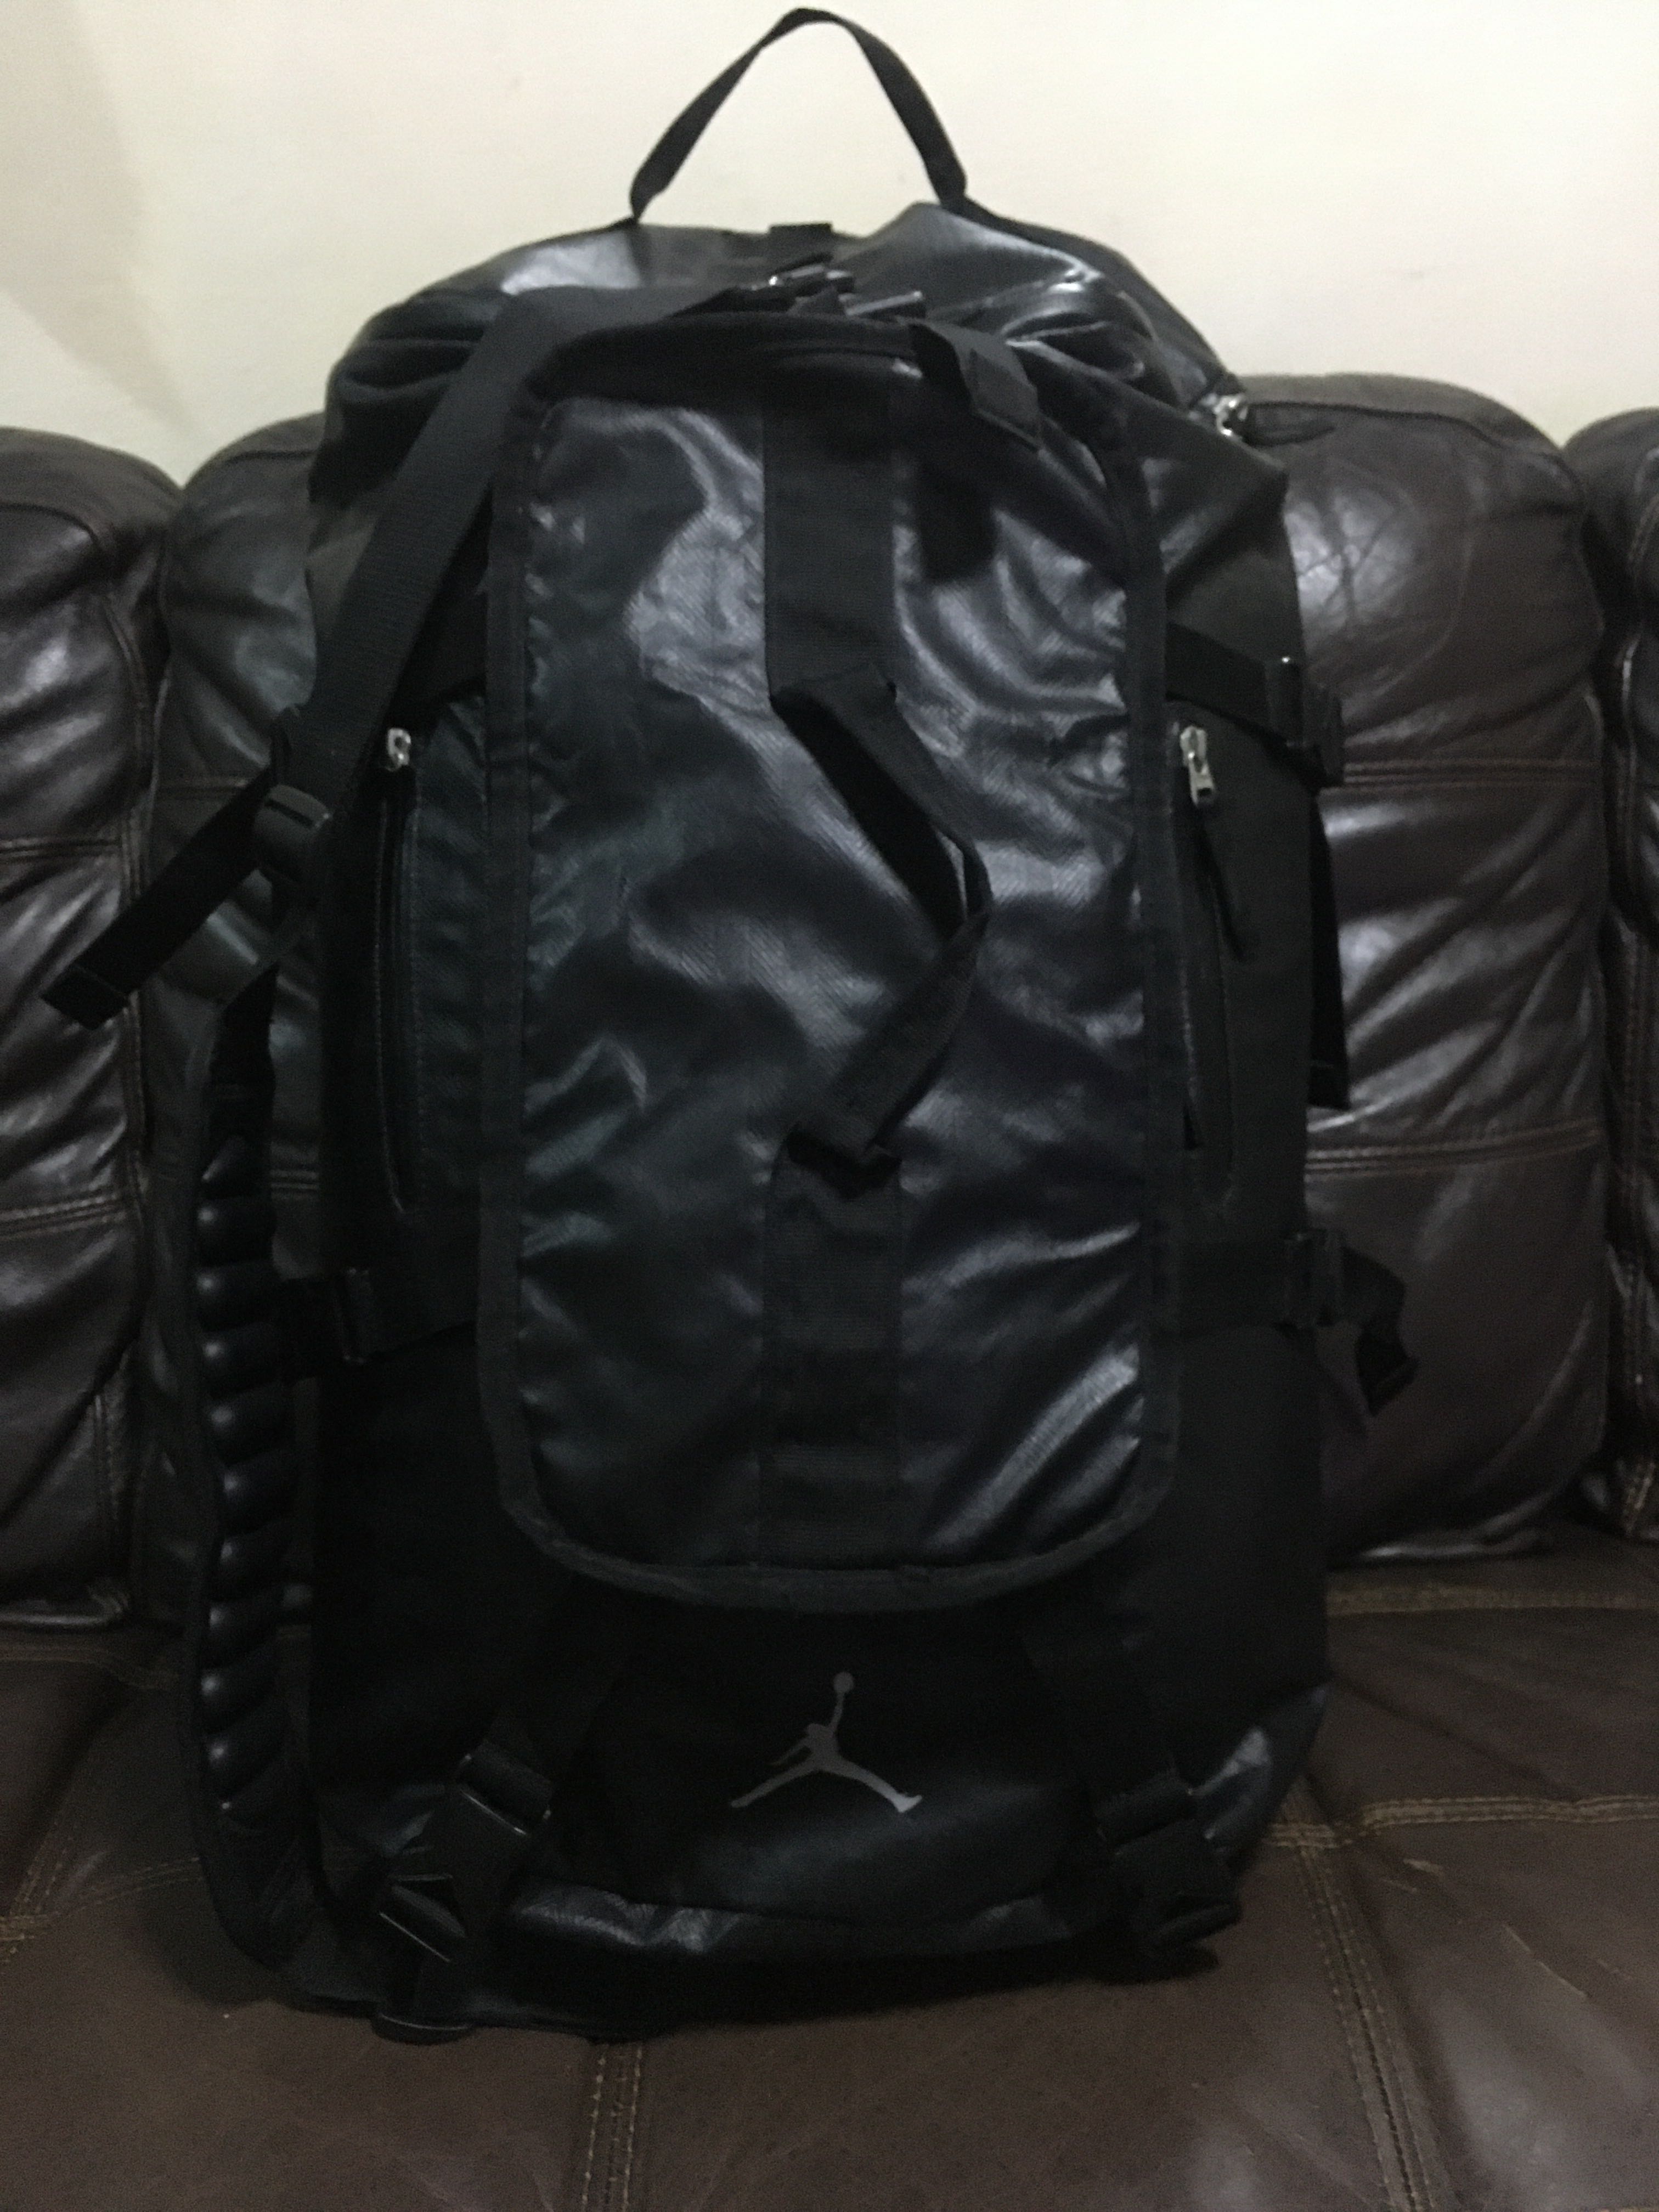 jordan duffle bag backpack